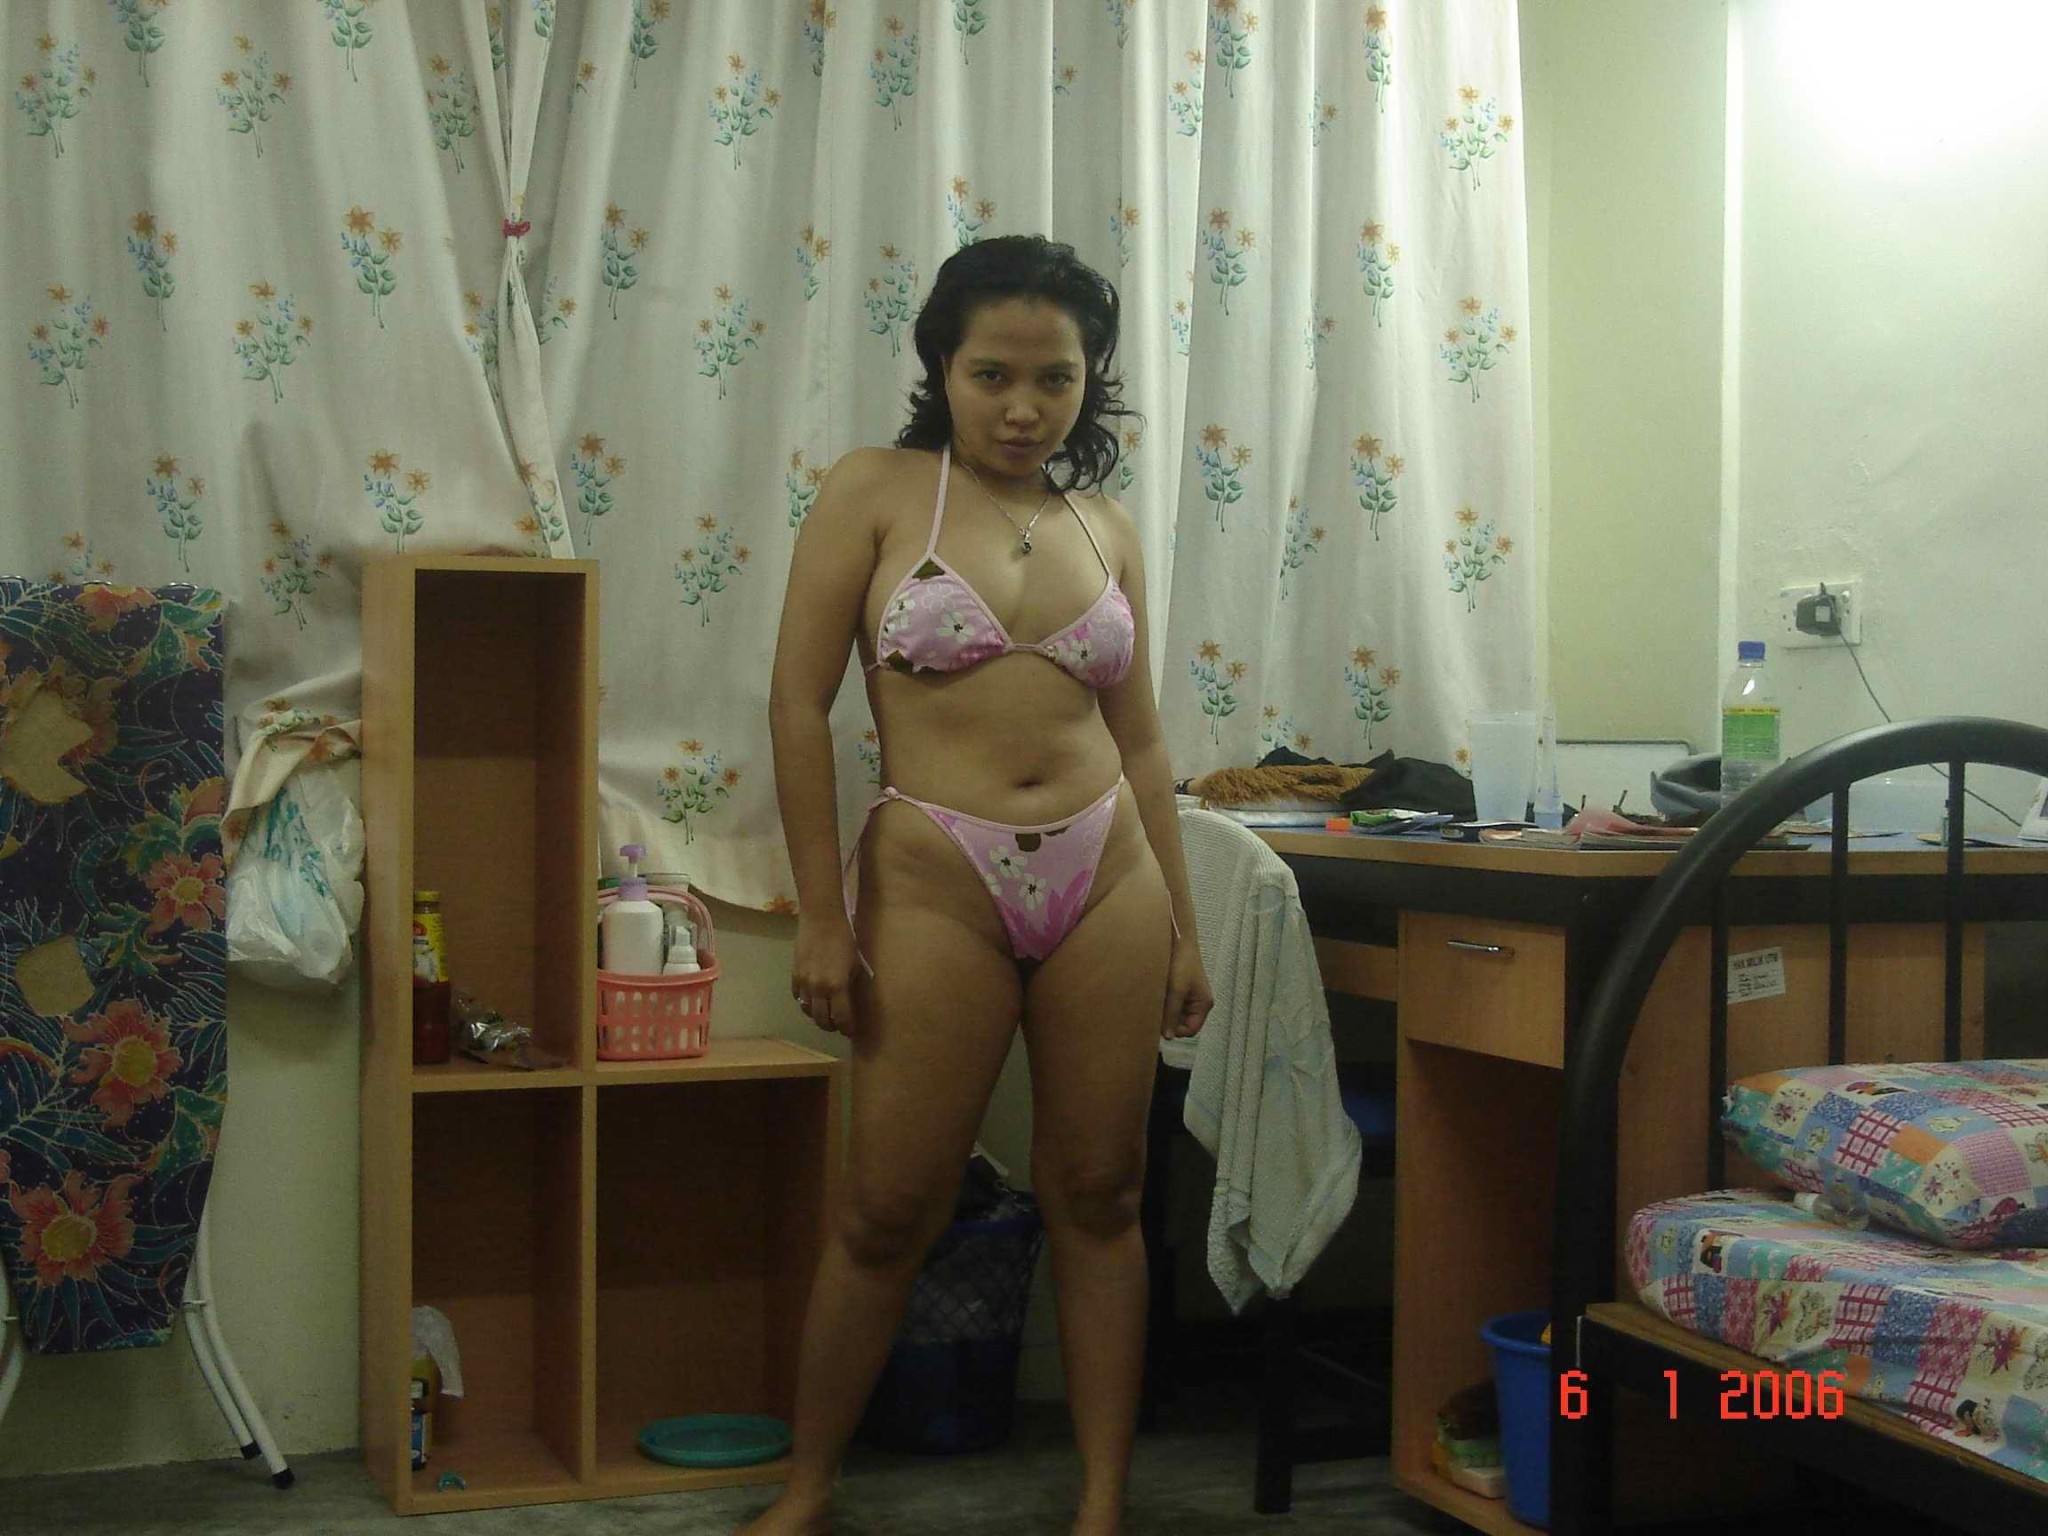 Asian amateur girl shares sexy nude photos #69987827